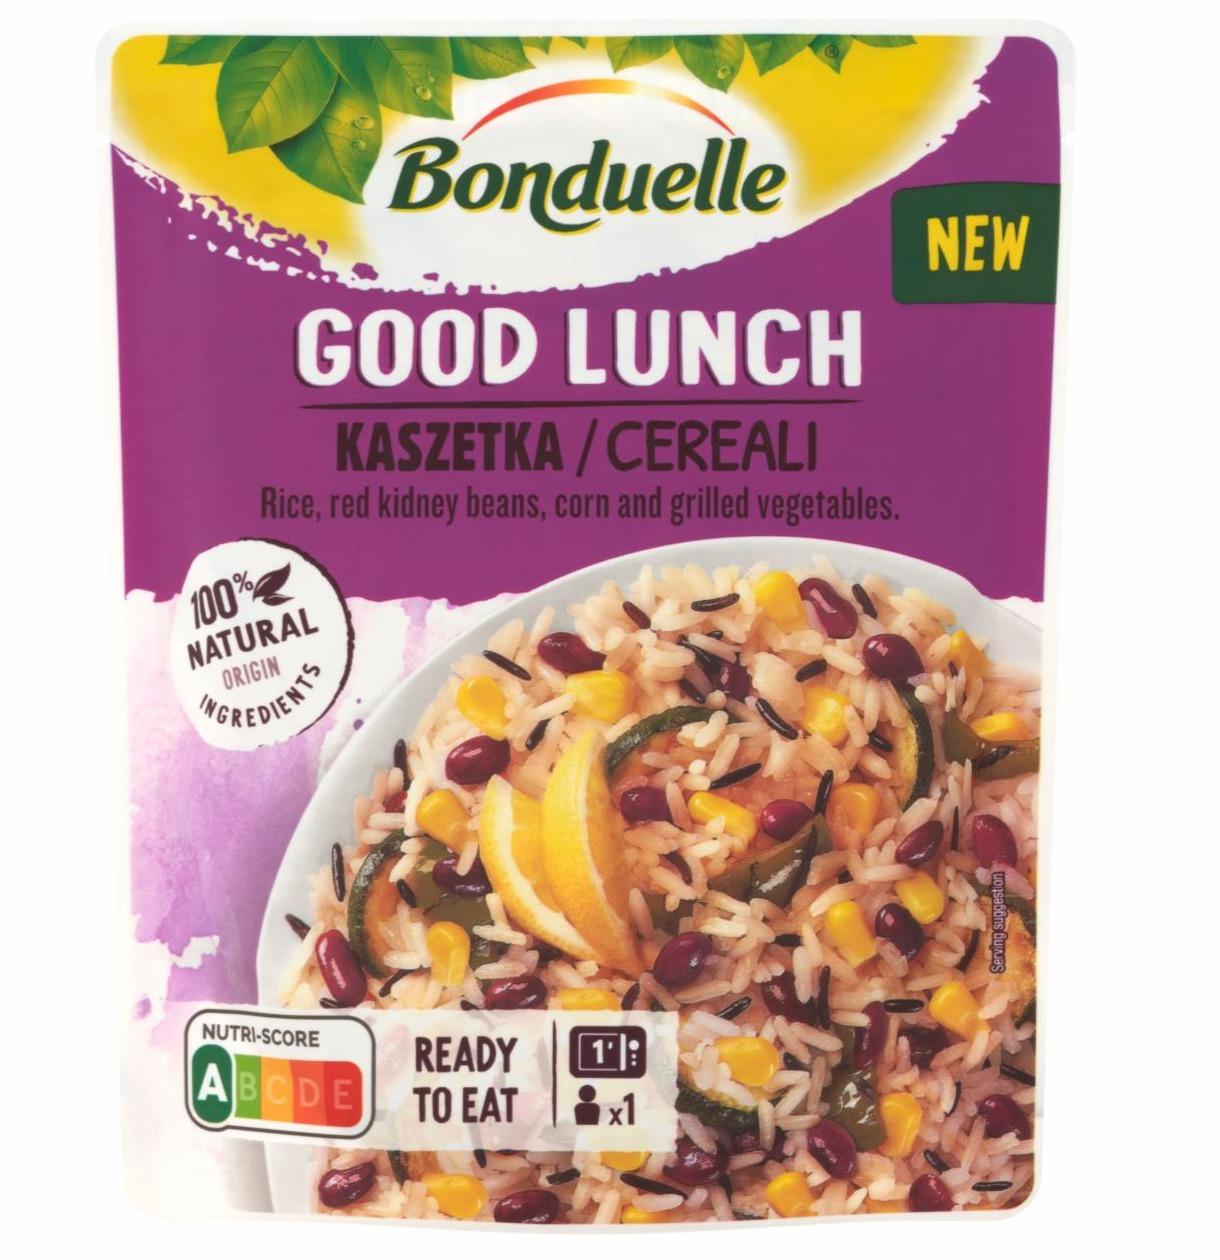 Képek - Bonduelle Good Lunch vörösbab, rizs, csemegekukorica, grillezett zöldségek keveréke 250 g